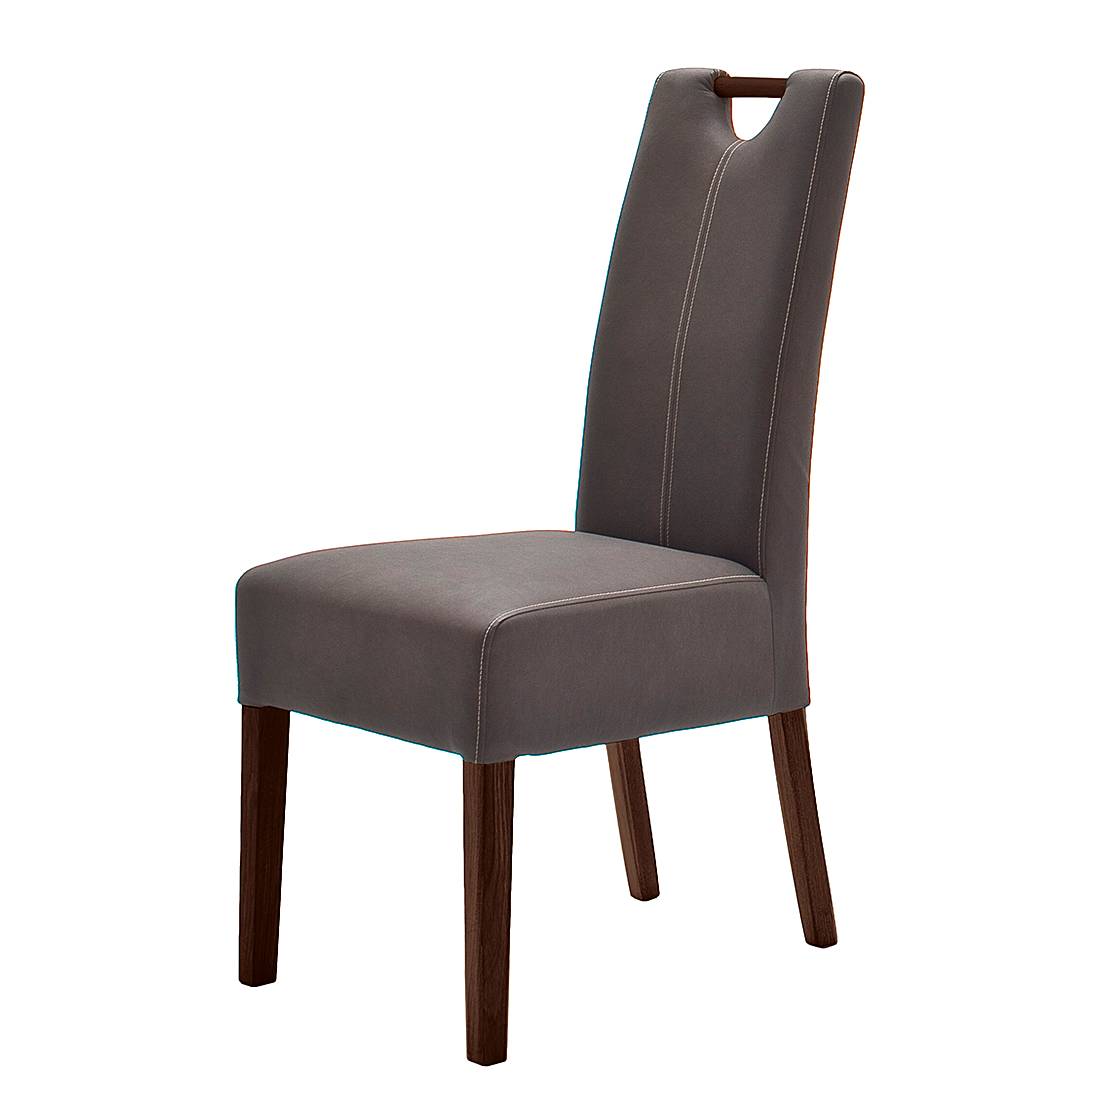 Bellinzona beklede stoel – voor een modern huis kRbXlML8